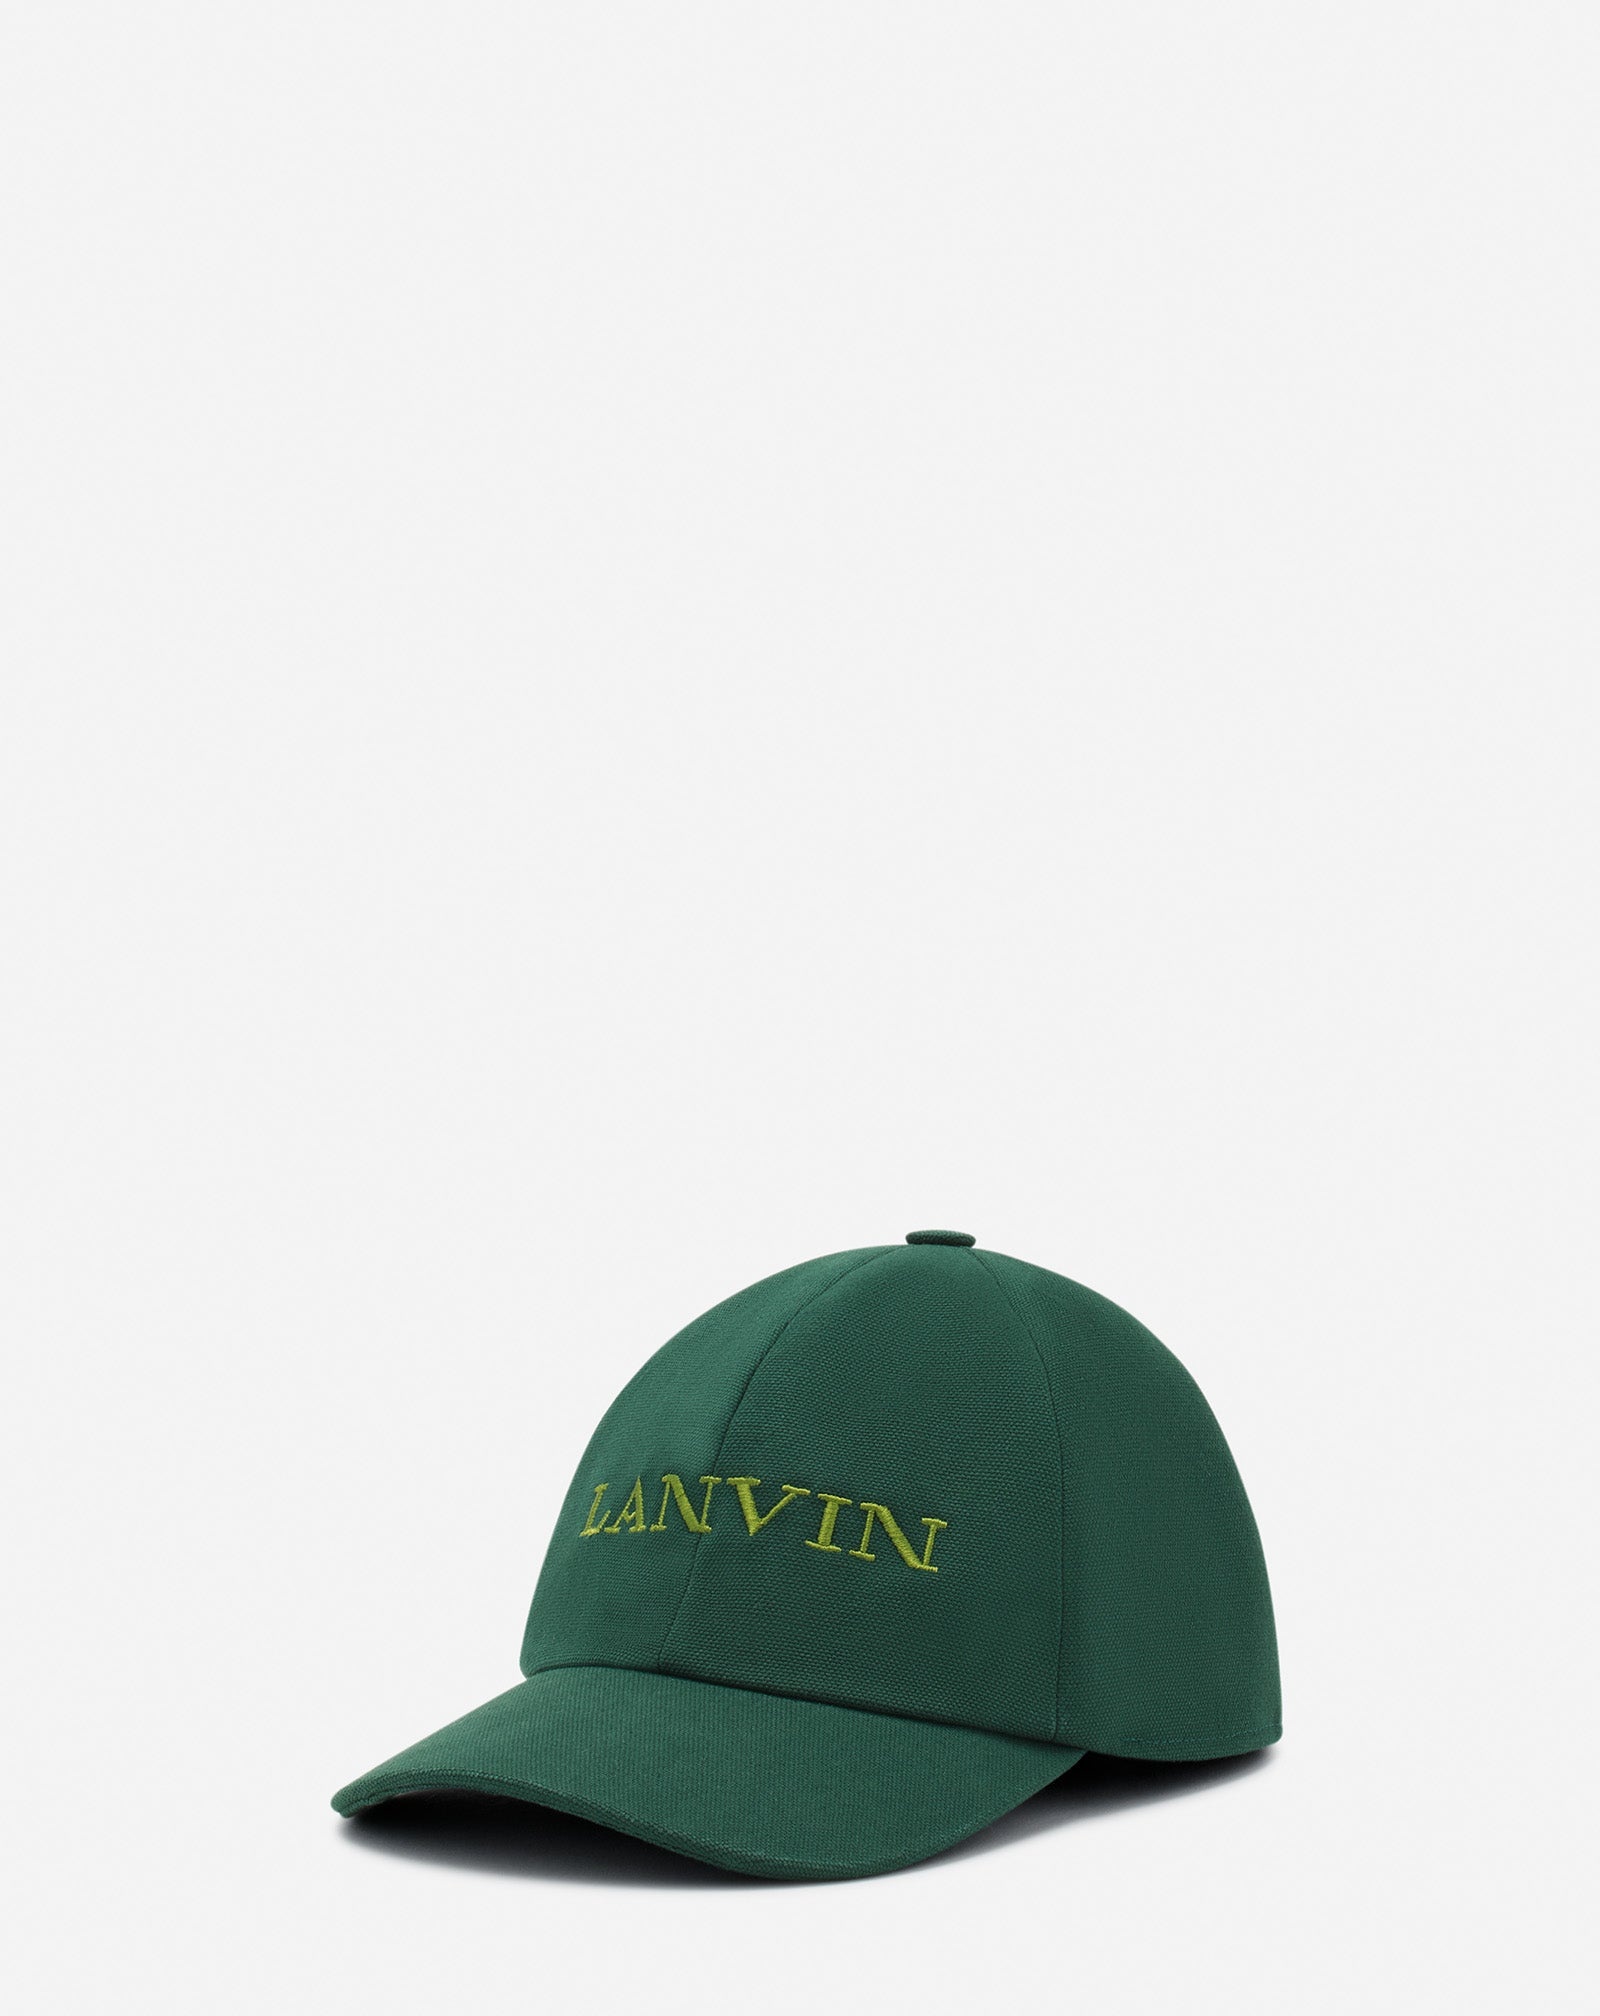 LANVIN COTTON CAP - 3